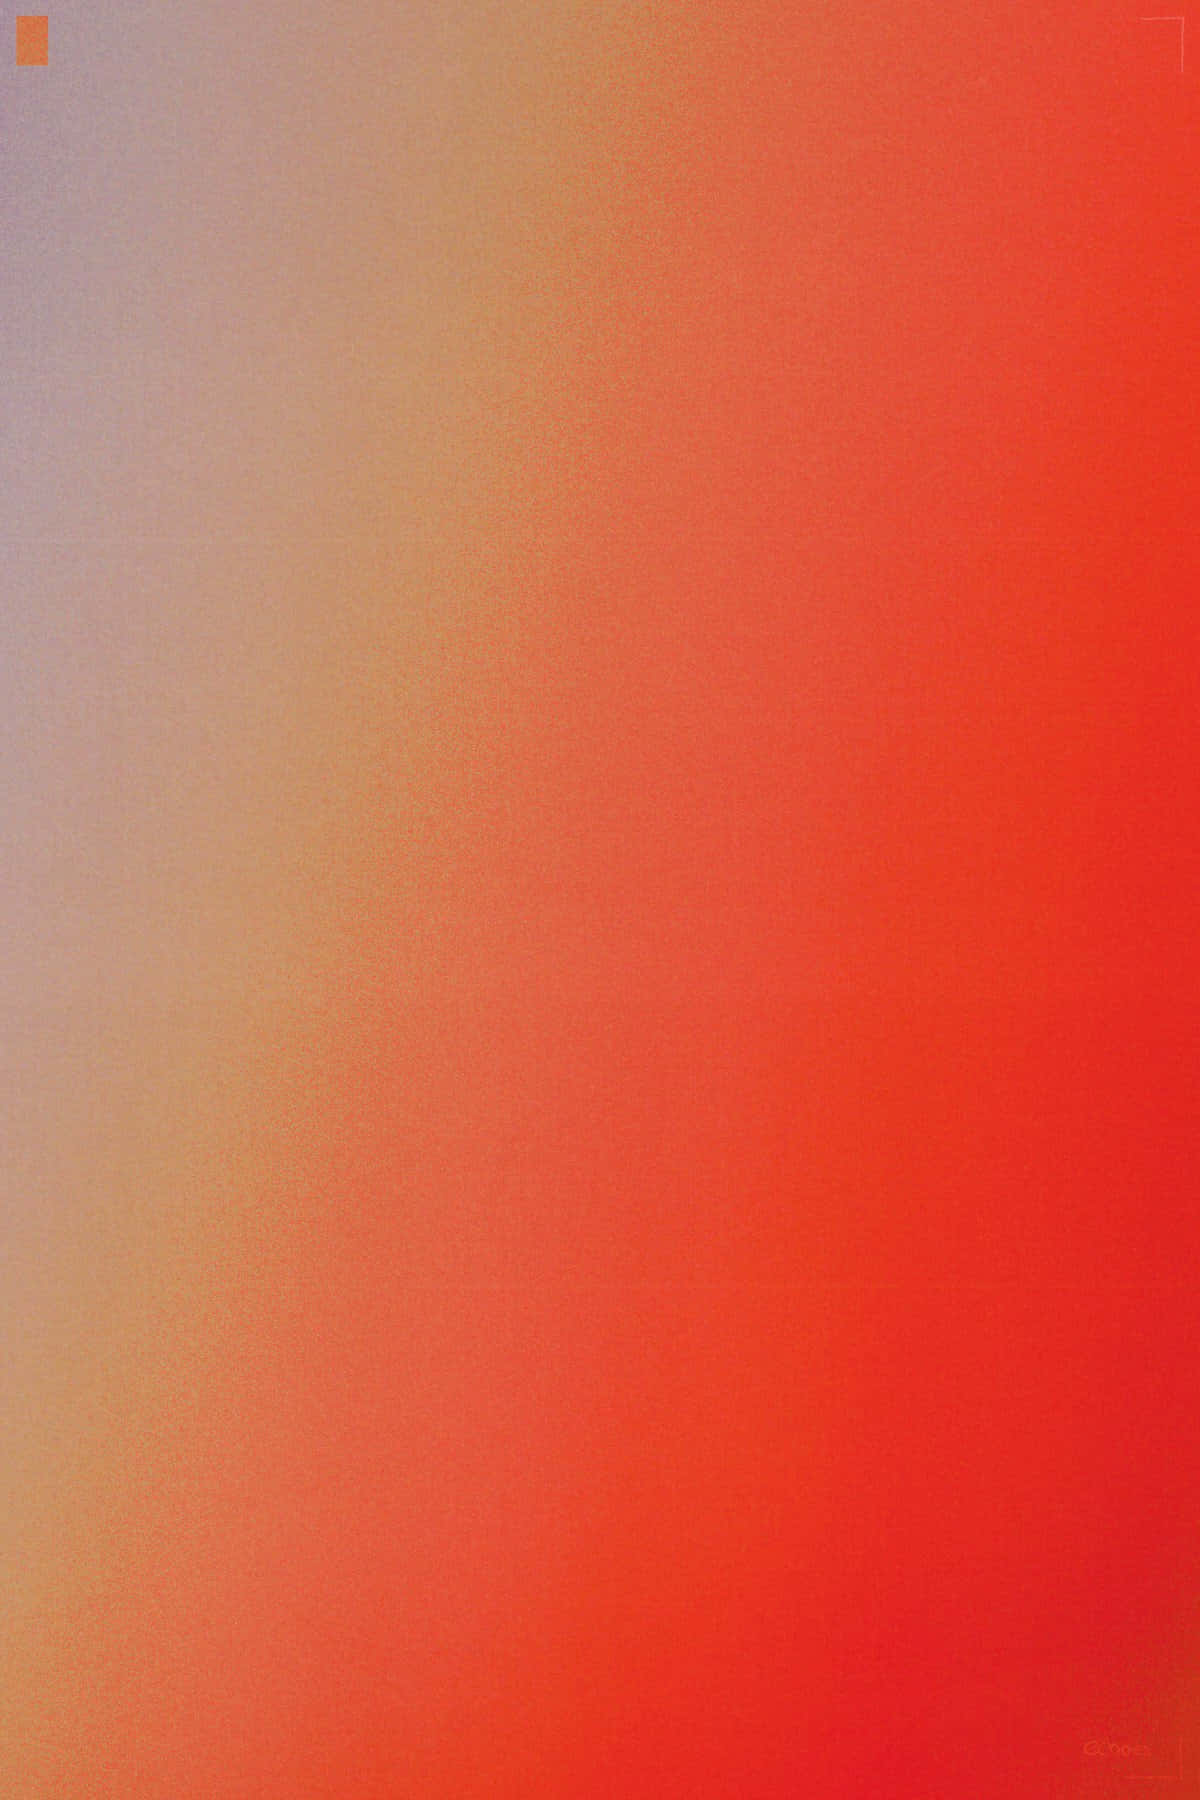 Rød Og Orange 1200 X 1800 Wallpaper